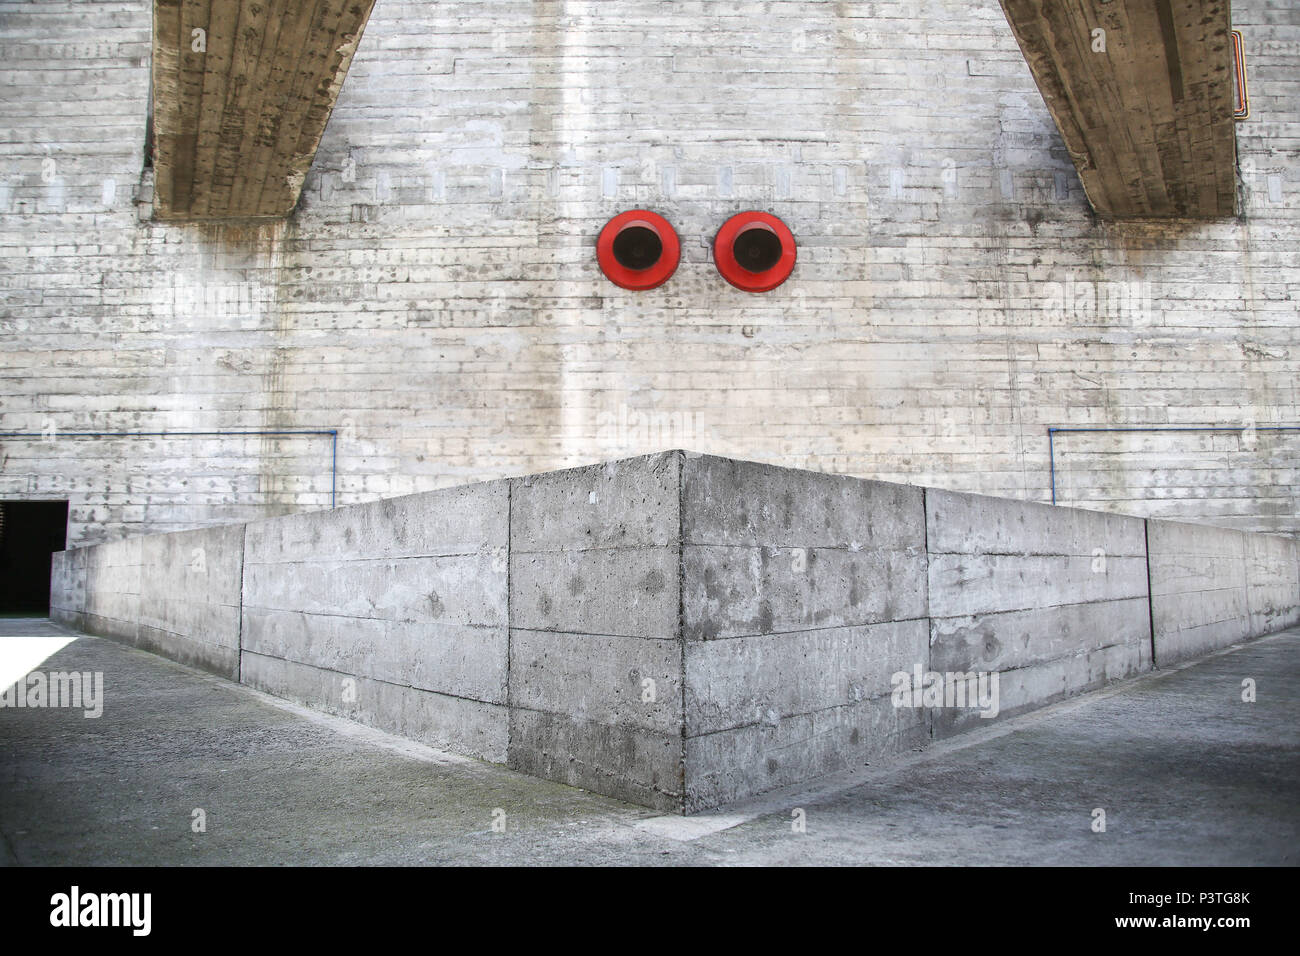 SÃO PAULO, SP – 05.02.2016: SESC POMPEIA - Passarelas de concreto que  interligam as duas torres (quadra e vestiários) do edifício SESC Pompéia. Construída a partir de uma antiga fábrica de tambores, na região da zona oeste de São Paulo, foi chamada de  Fábrica da Pompeia. O SESC Pompeia foi projetado pela arquiteta italiana Lina Bo Bardi. A obra começou em 1977 e durou nove anos. A primeira etapa foi inaugurada em 1982 e em1986 o bloco esportivo foi aberto ao público. (Foto: Bruna Marques / Fotoarena) Stock Photo